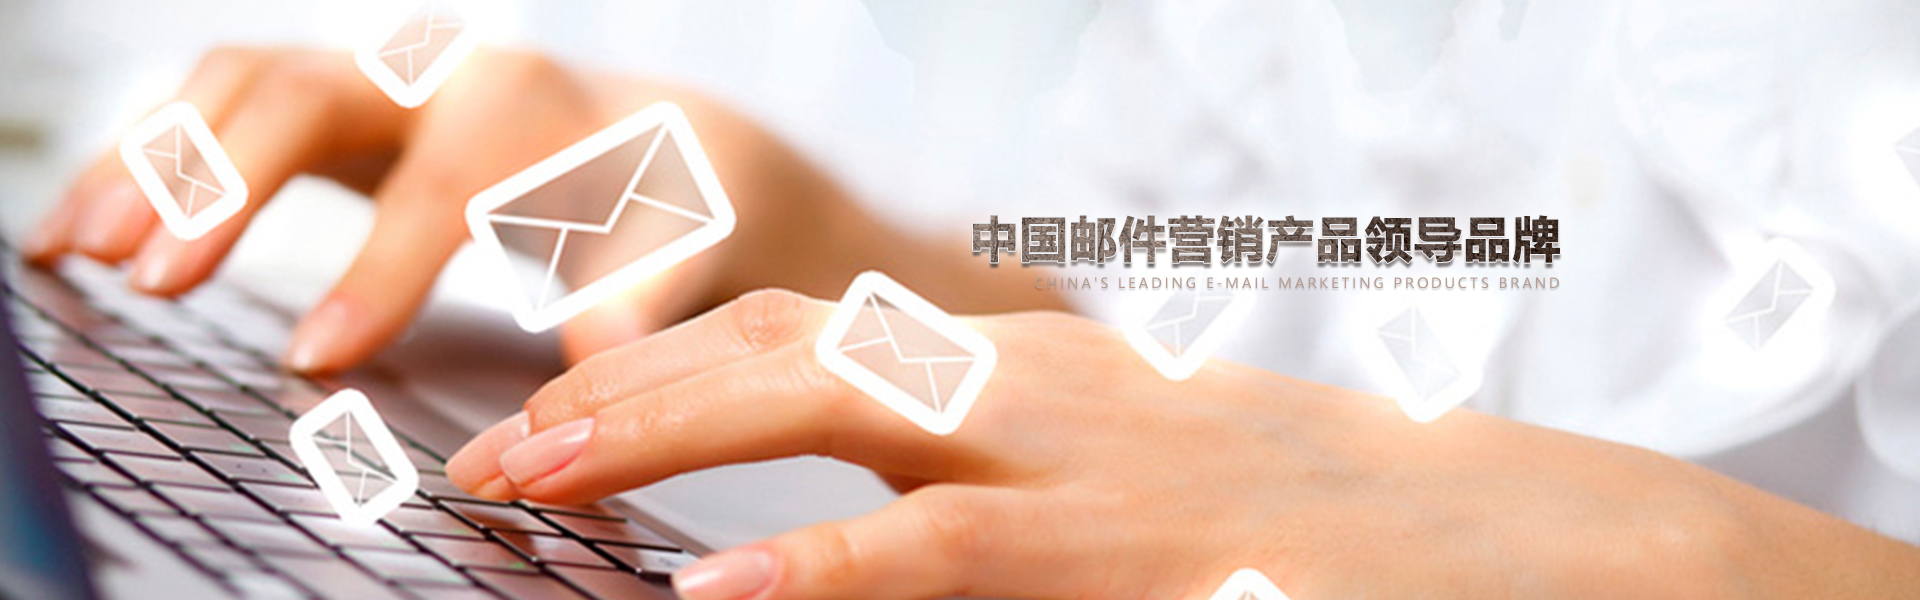 中国邮件营销服务领导者,帮助数千企业从事EDM邮件营销,中国数据商城网因为专业所有出色